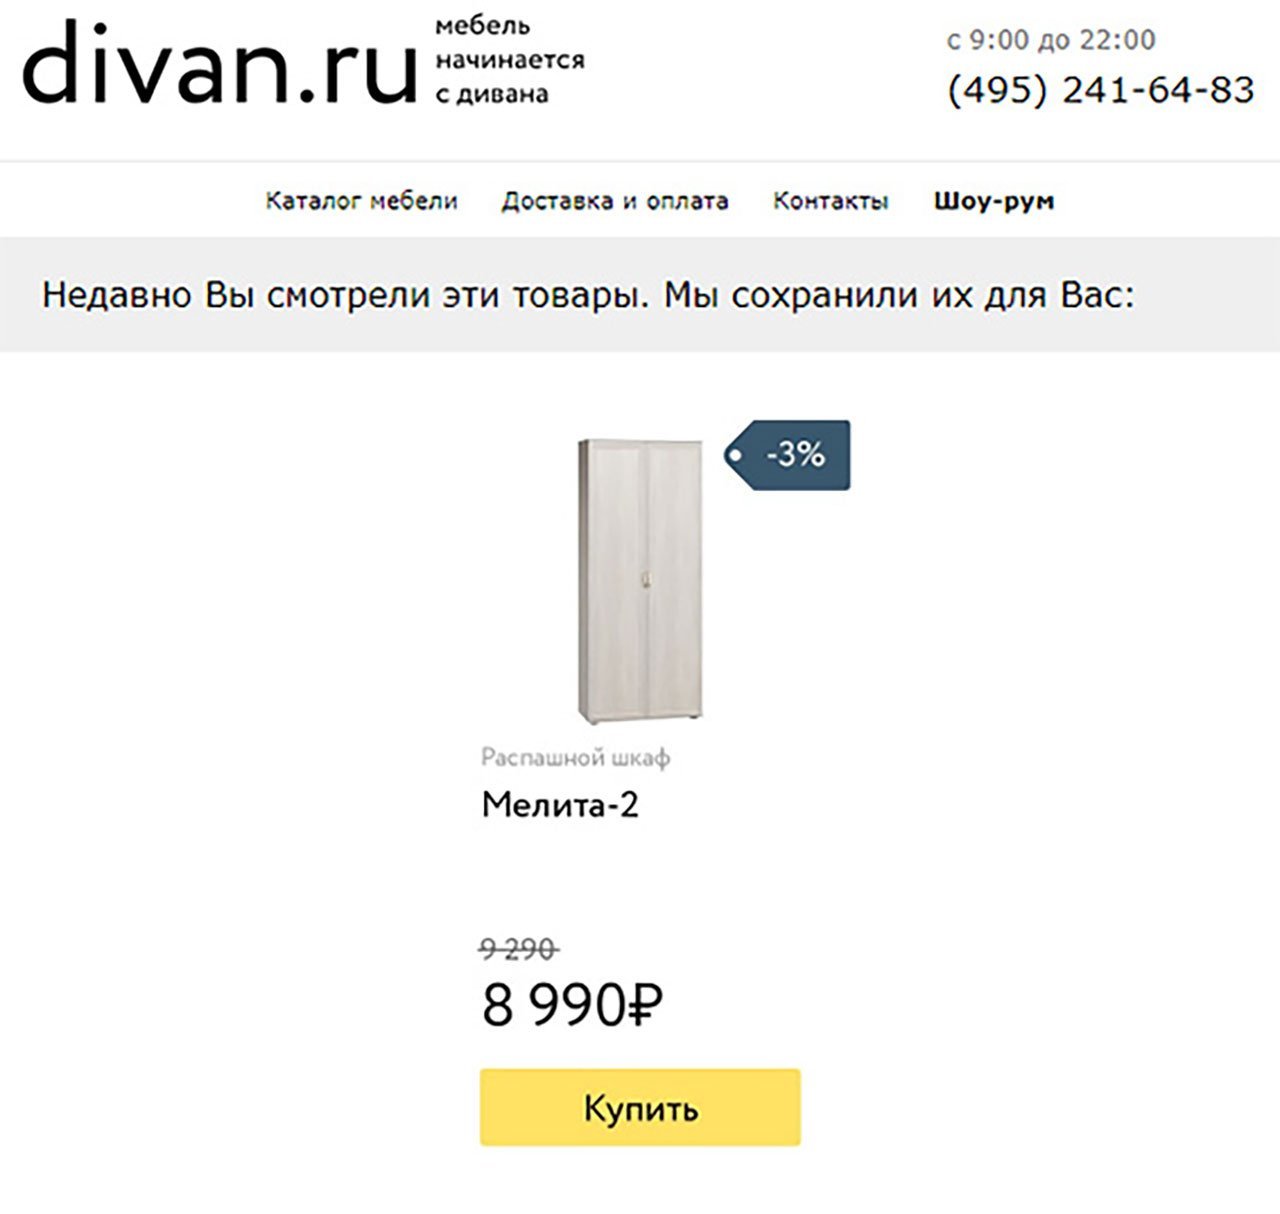 Email-рассылка divan.ru с подстановкой процента скидки